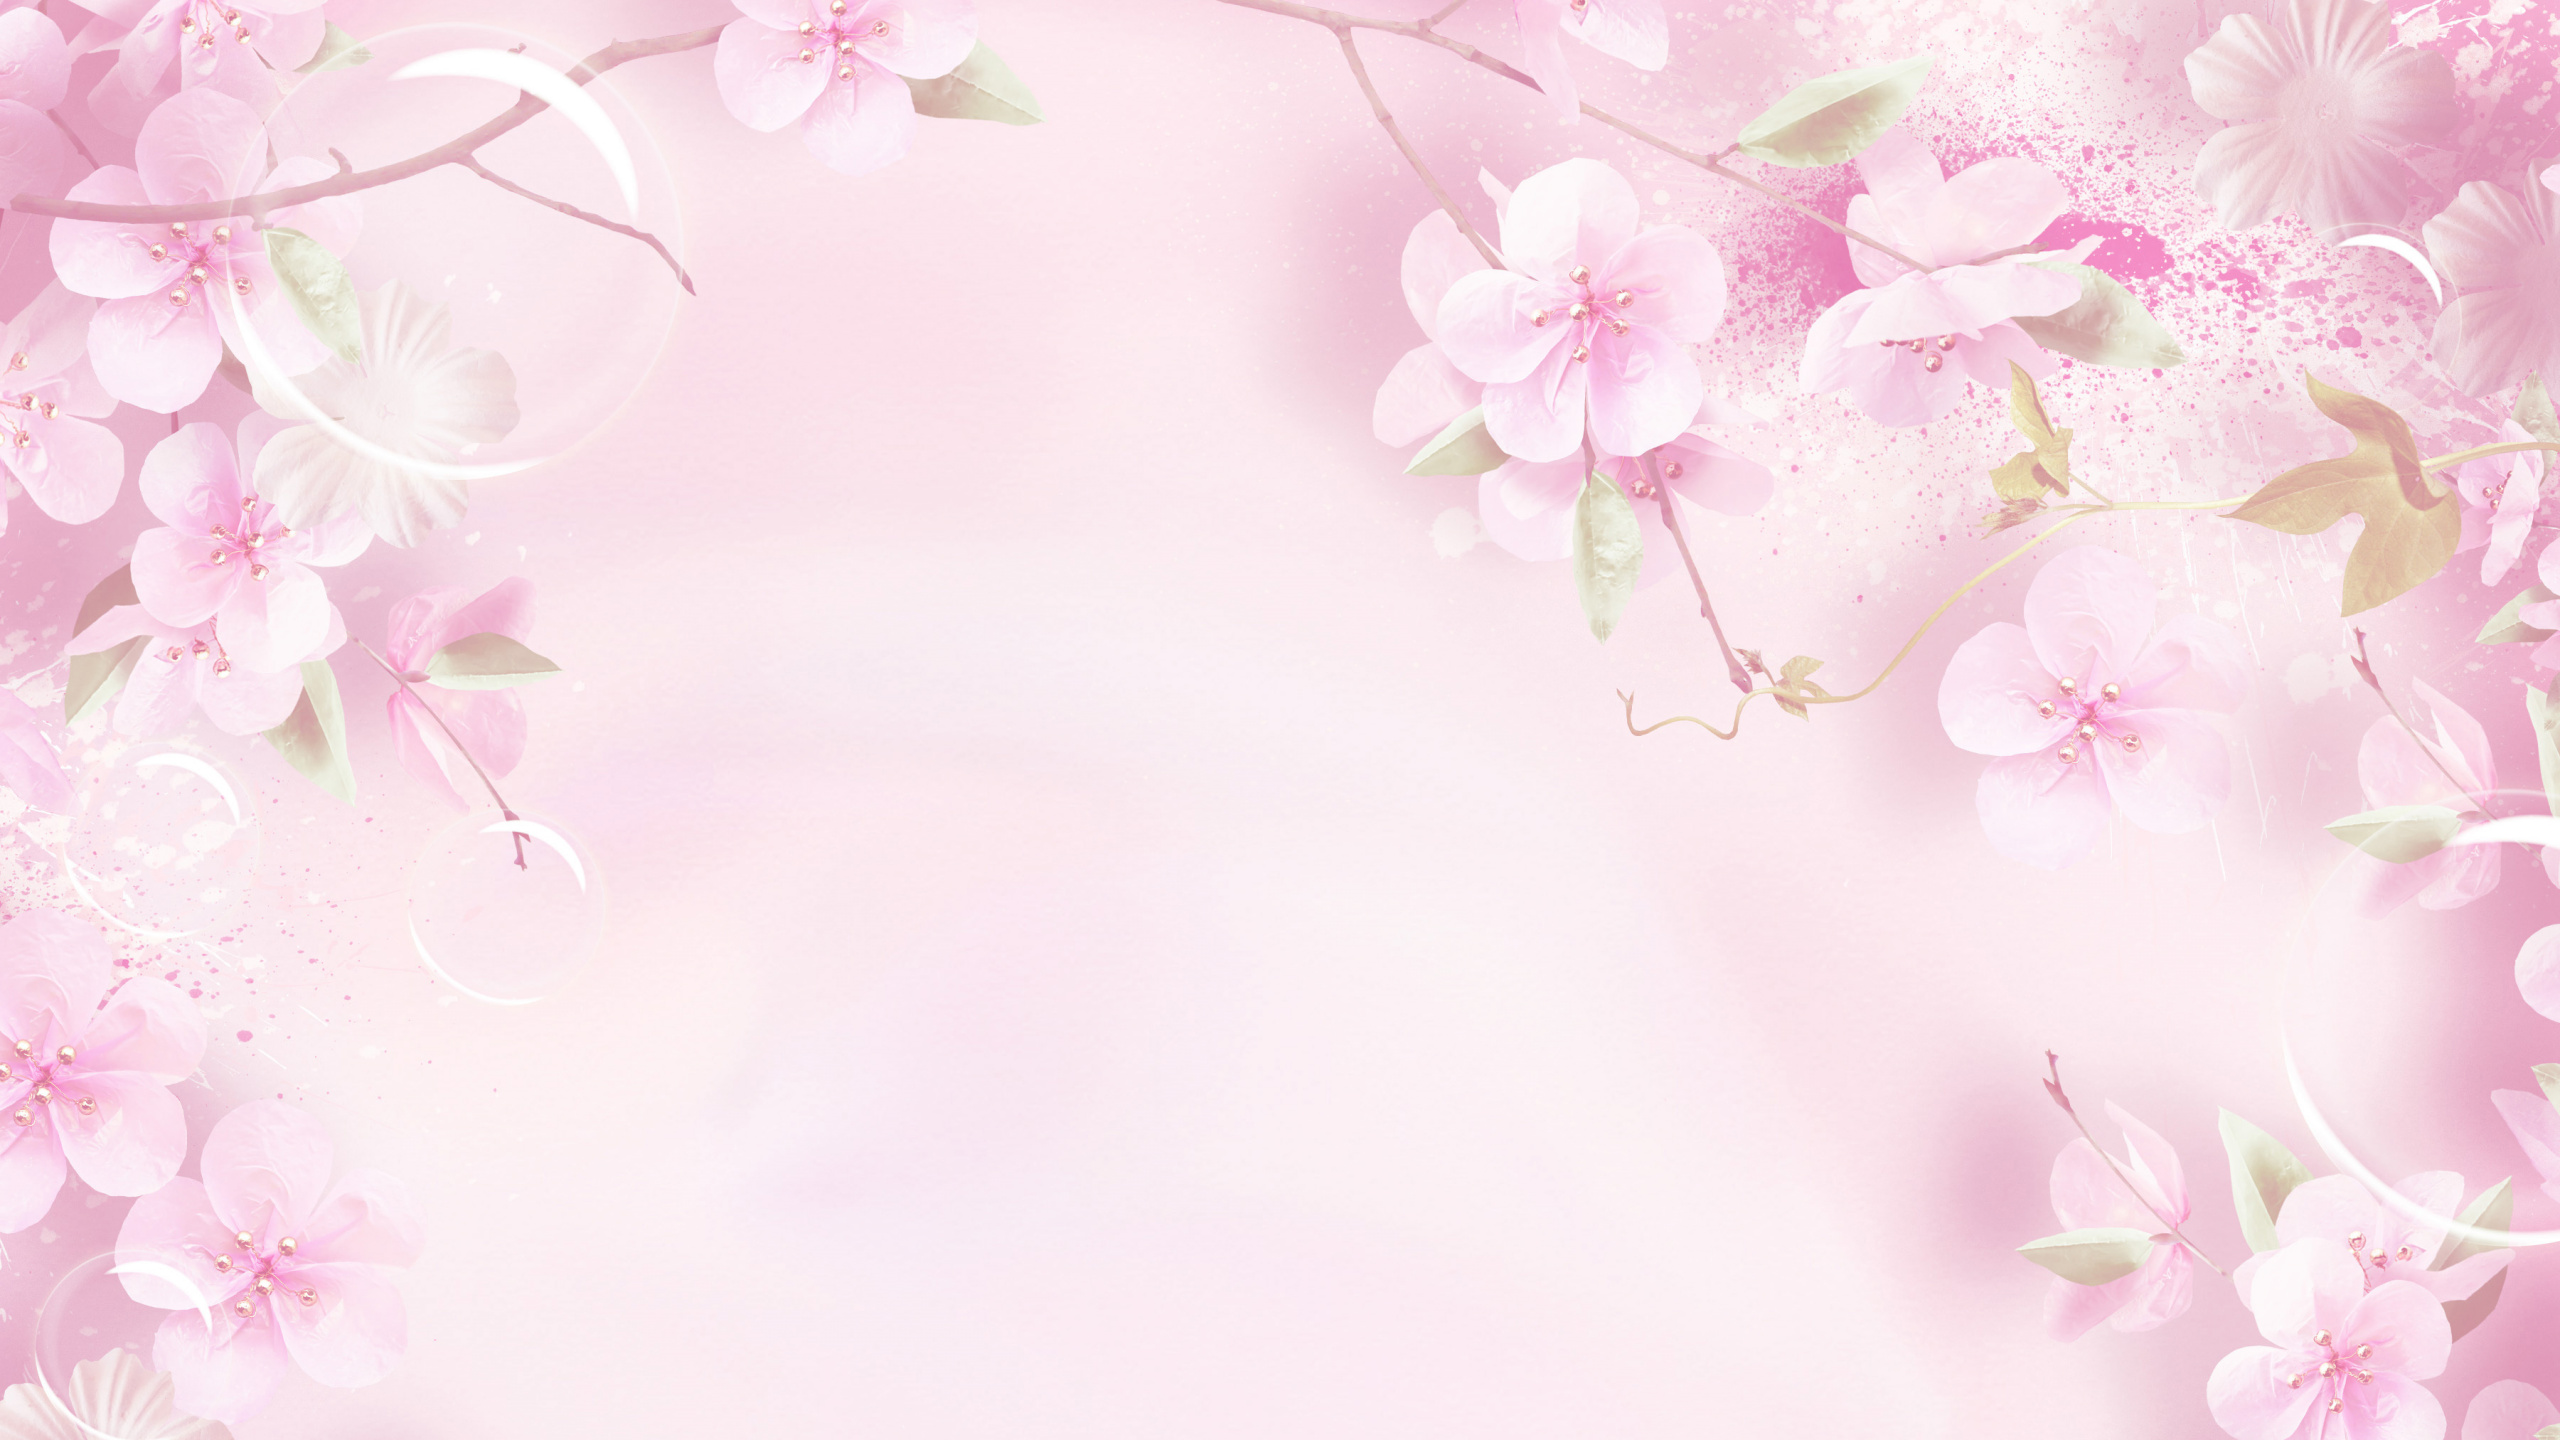 粉红色, 弹簧, 开花, 花卉设计, 樱花 壁纸 2560x1440 允许